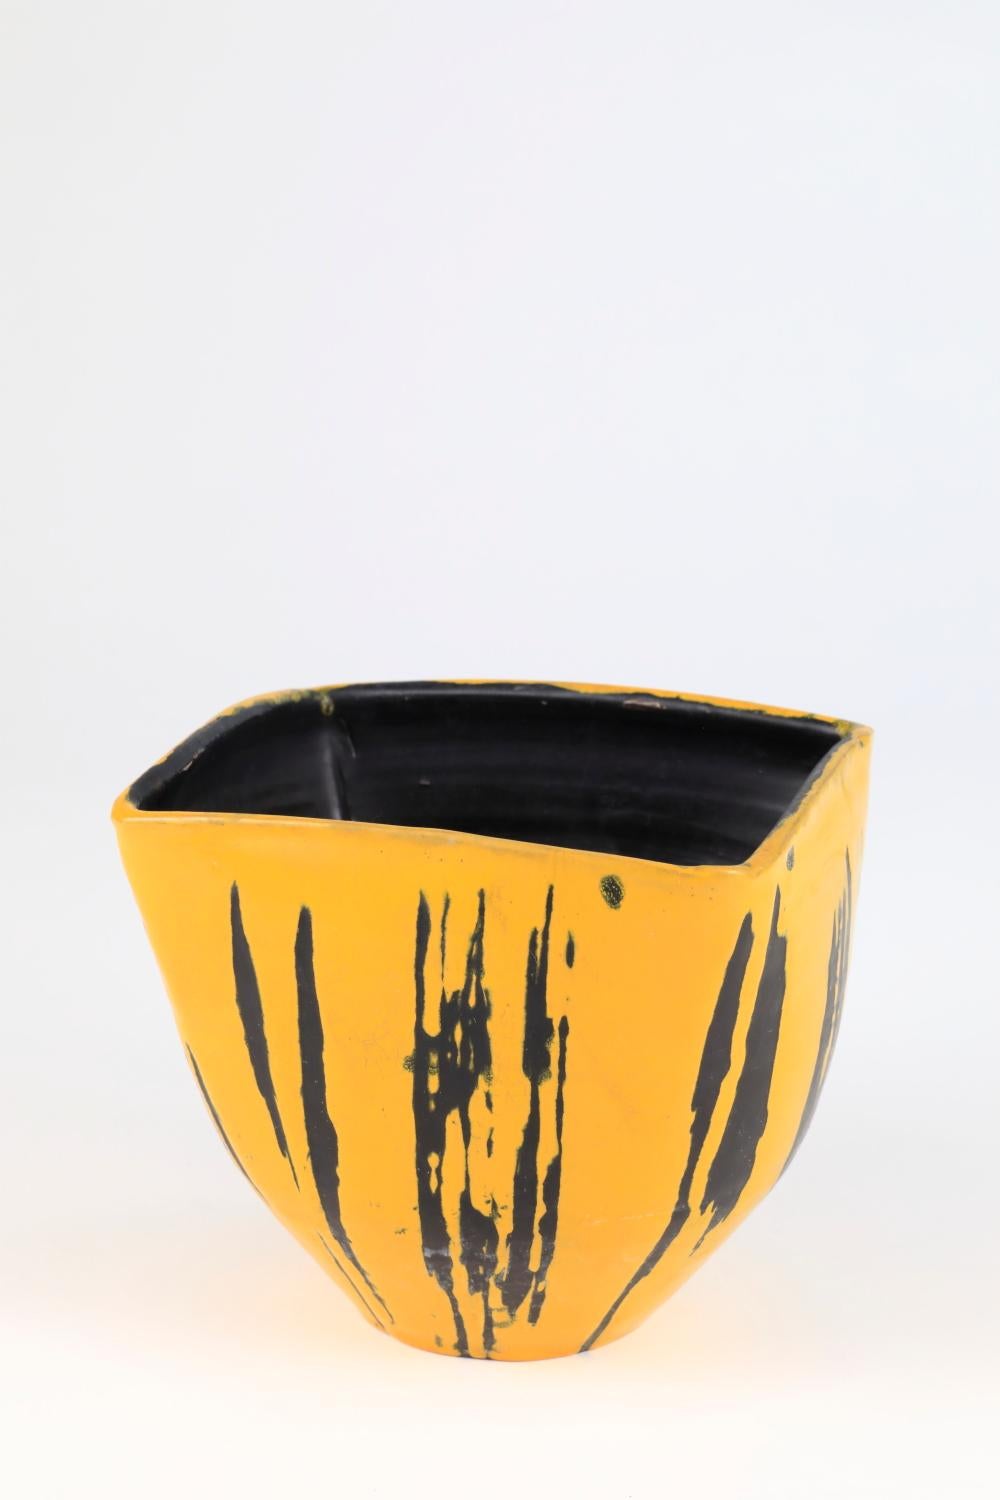 Ce bol en céramique de Livia Gorka se distingue comme une pièce exceptionnelle, incarnant la vision et le savoir-faire uniques de l'artiste. 
La combinaison frappante des teintes noires et jaunes, accentuée par des rayures noires, crée un contraste